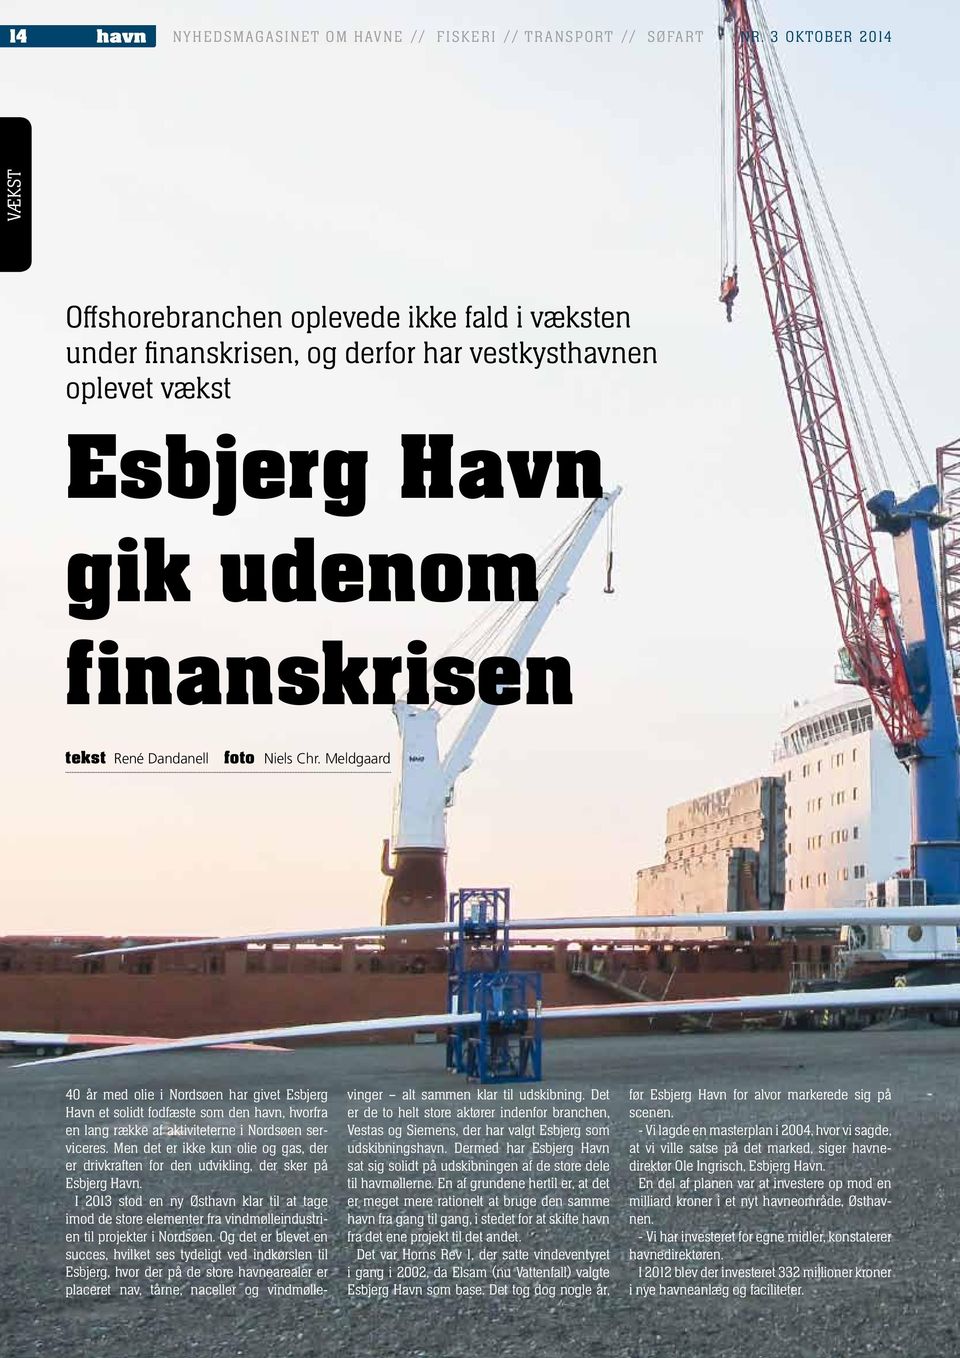 Meldgaard 40 år med olie i Nordsøen har givet Esbjerg Havn et solidt fodfæste som den havn, hvorfra en lang række af aktiviteterne i Nordsøen serviceres.